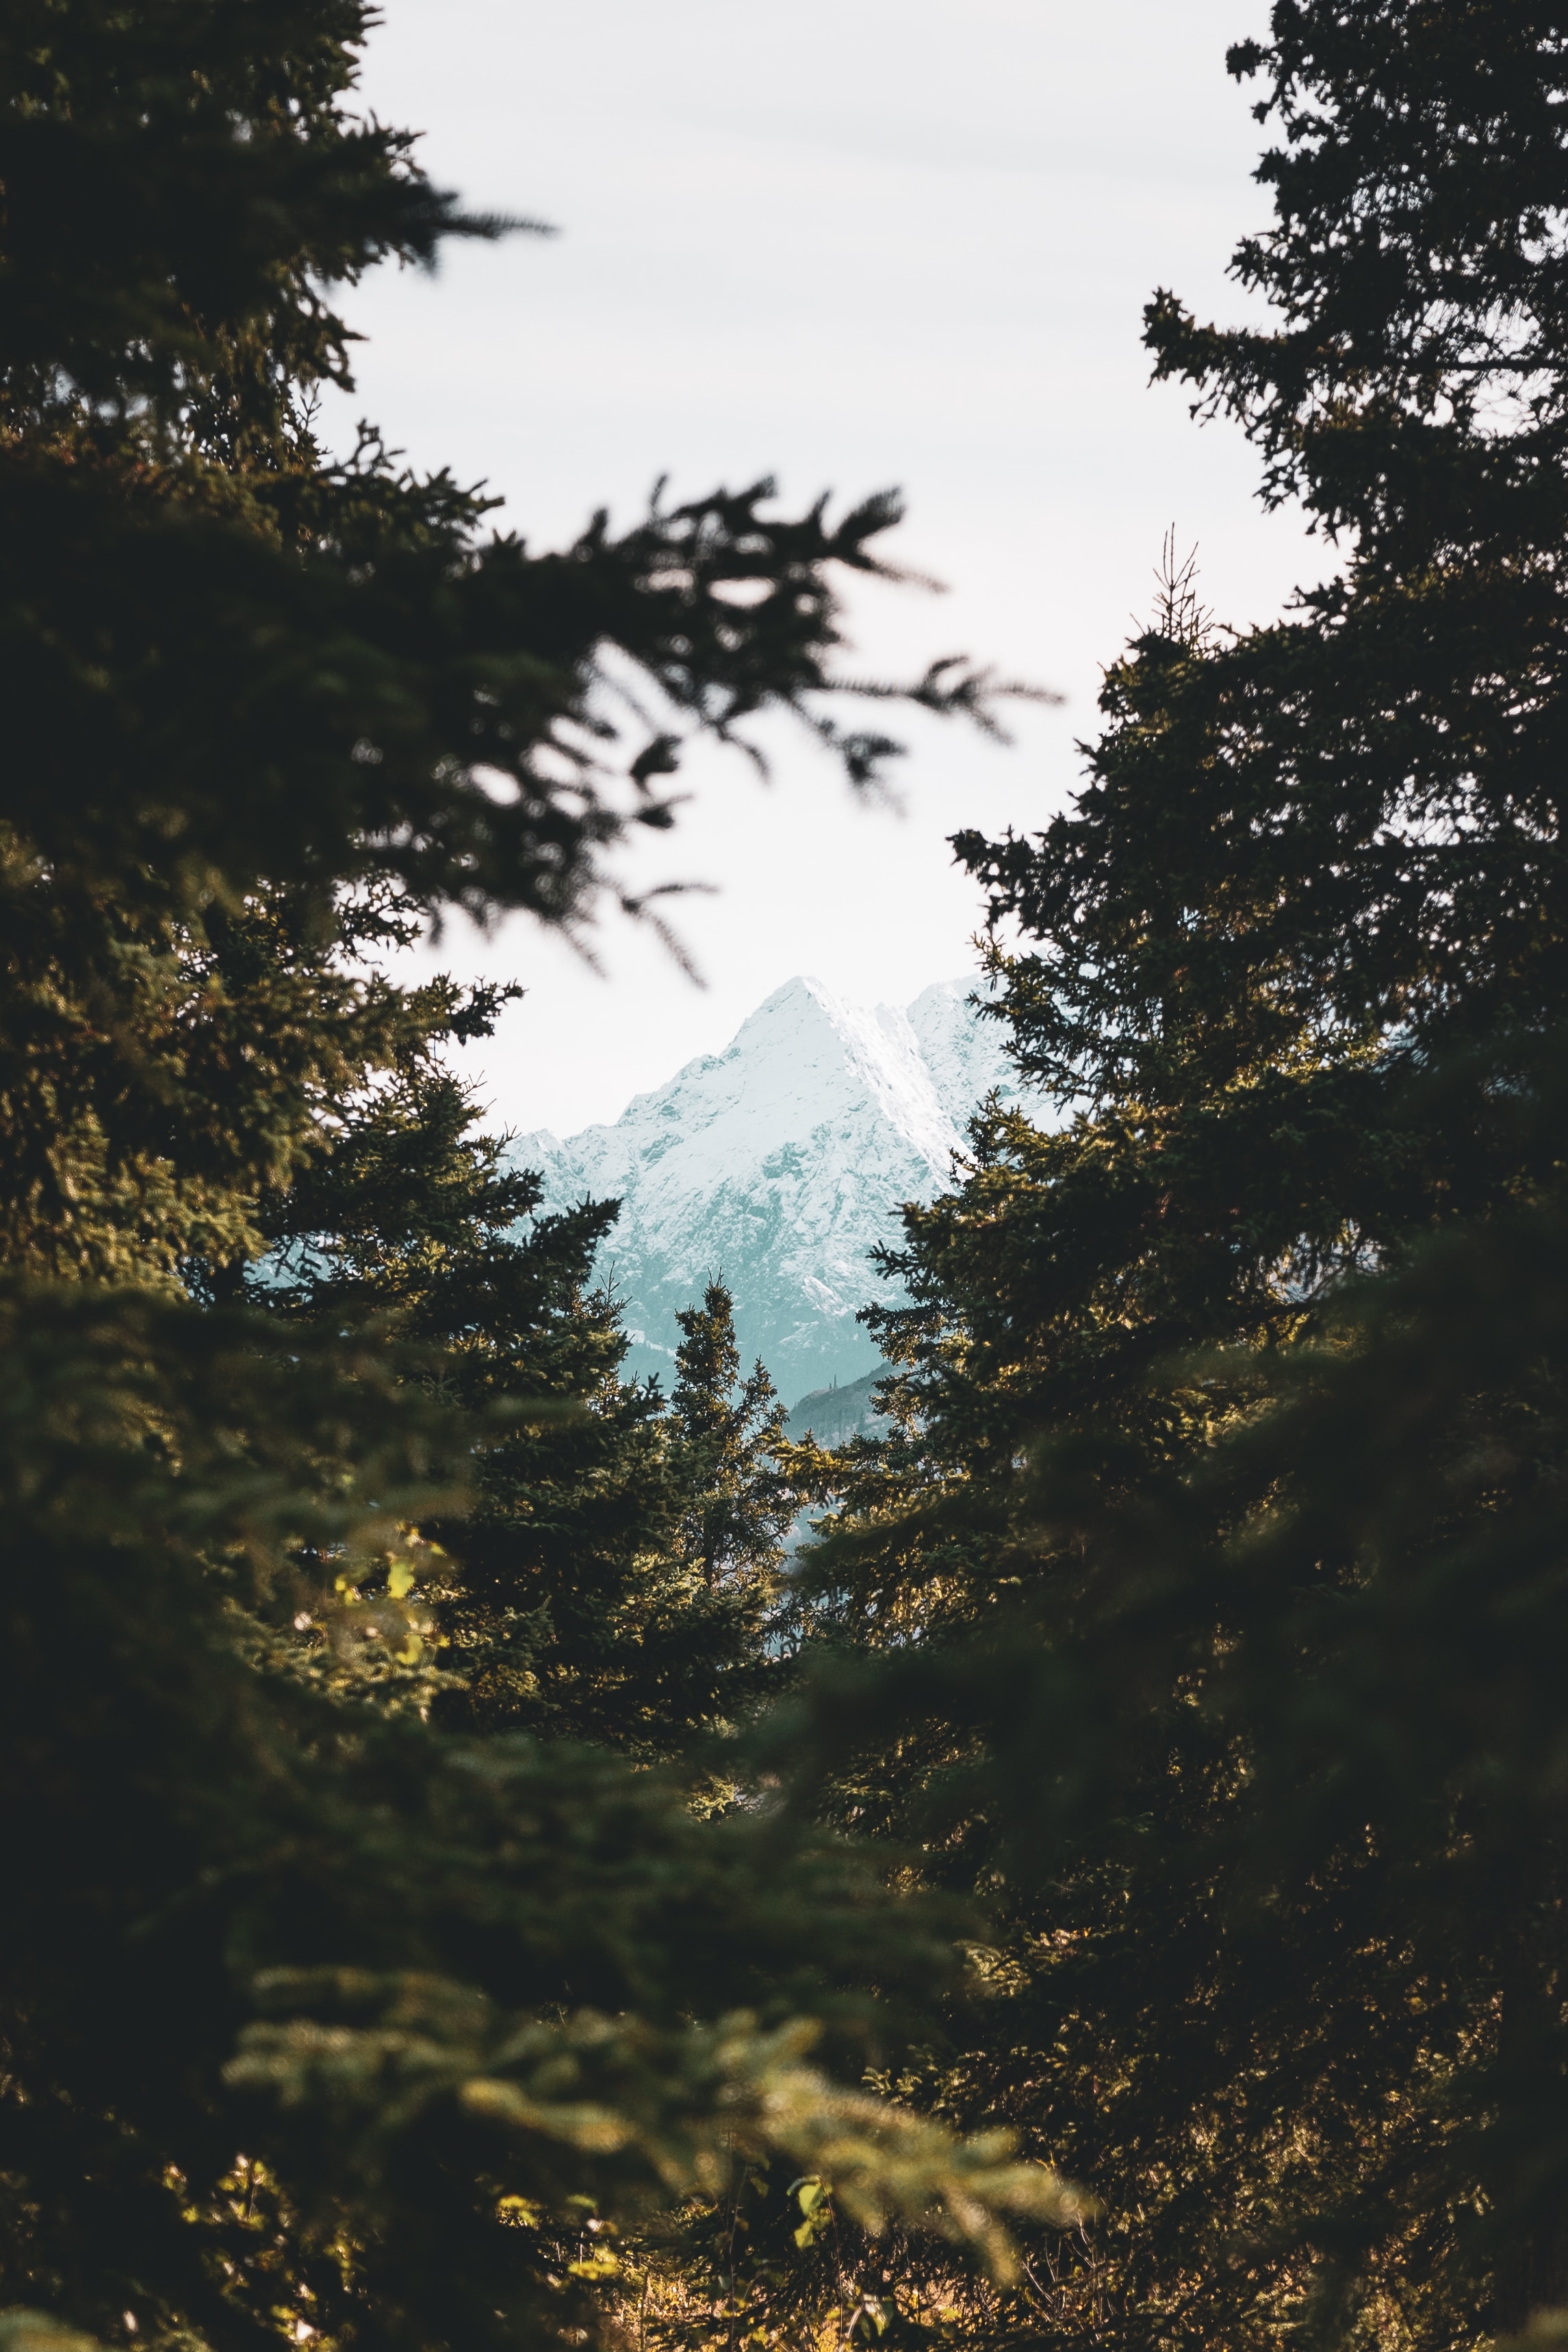 Фото обои гор, сосны, лес, пик, вершина горы, размытый фон, живописный, девушки - бесплатные картинки на Fonwall